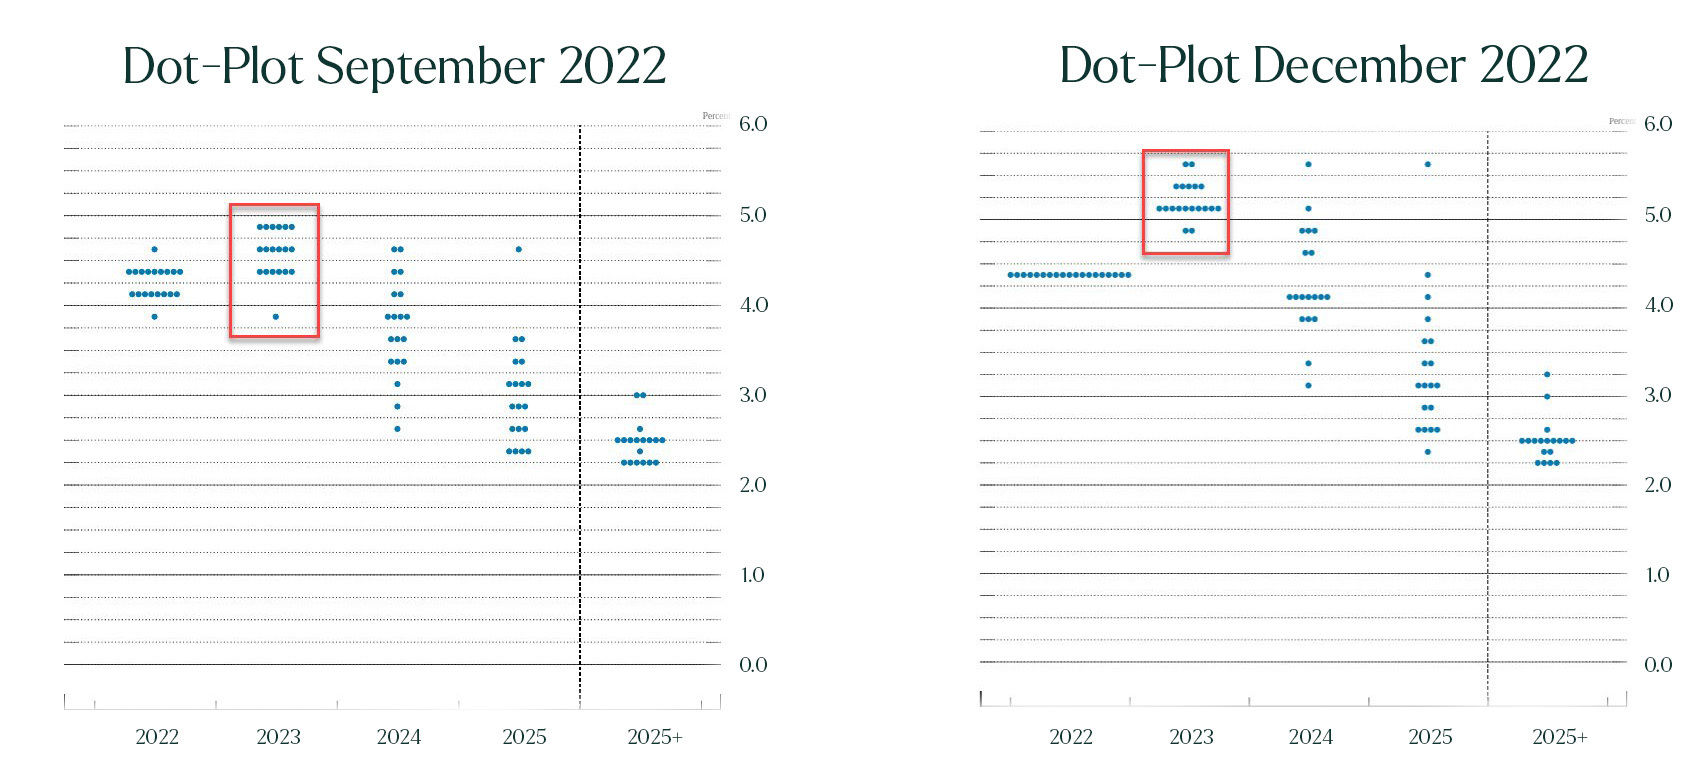 Dot-Plot Fed december 2022 vs september 2022